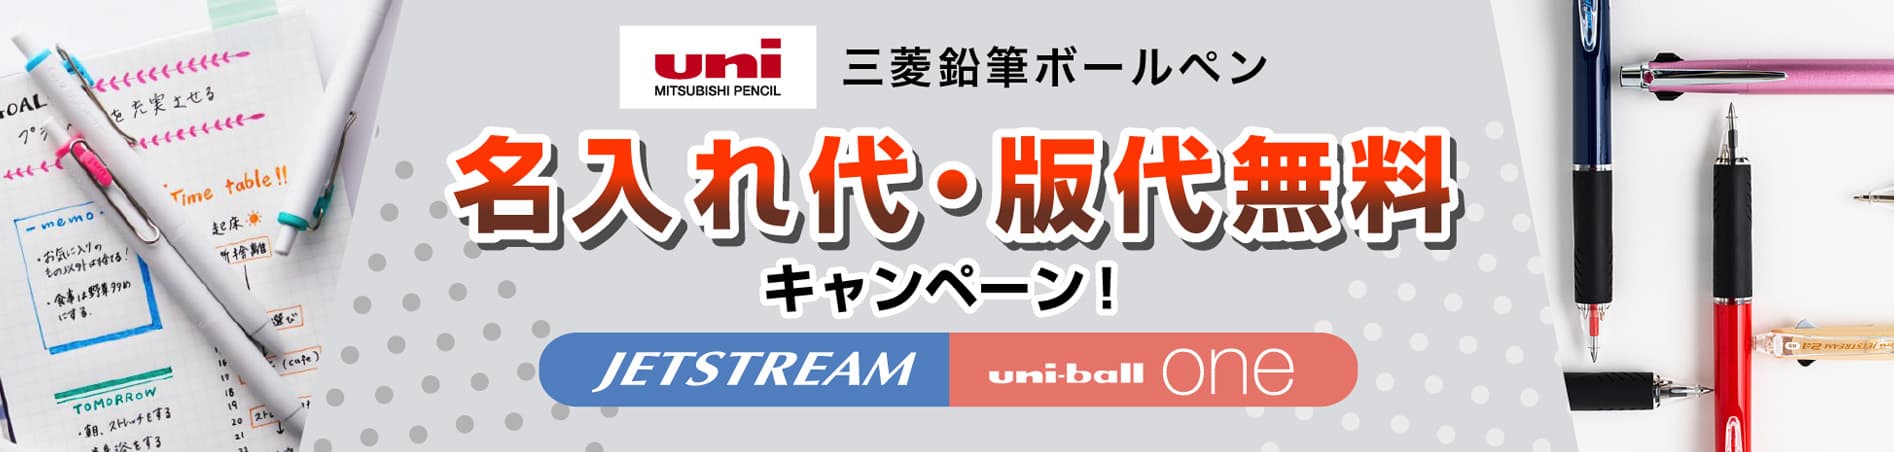 三菱鉛筆 ジェットストリーム名入れ代・版代無料キャンペーン